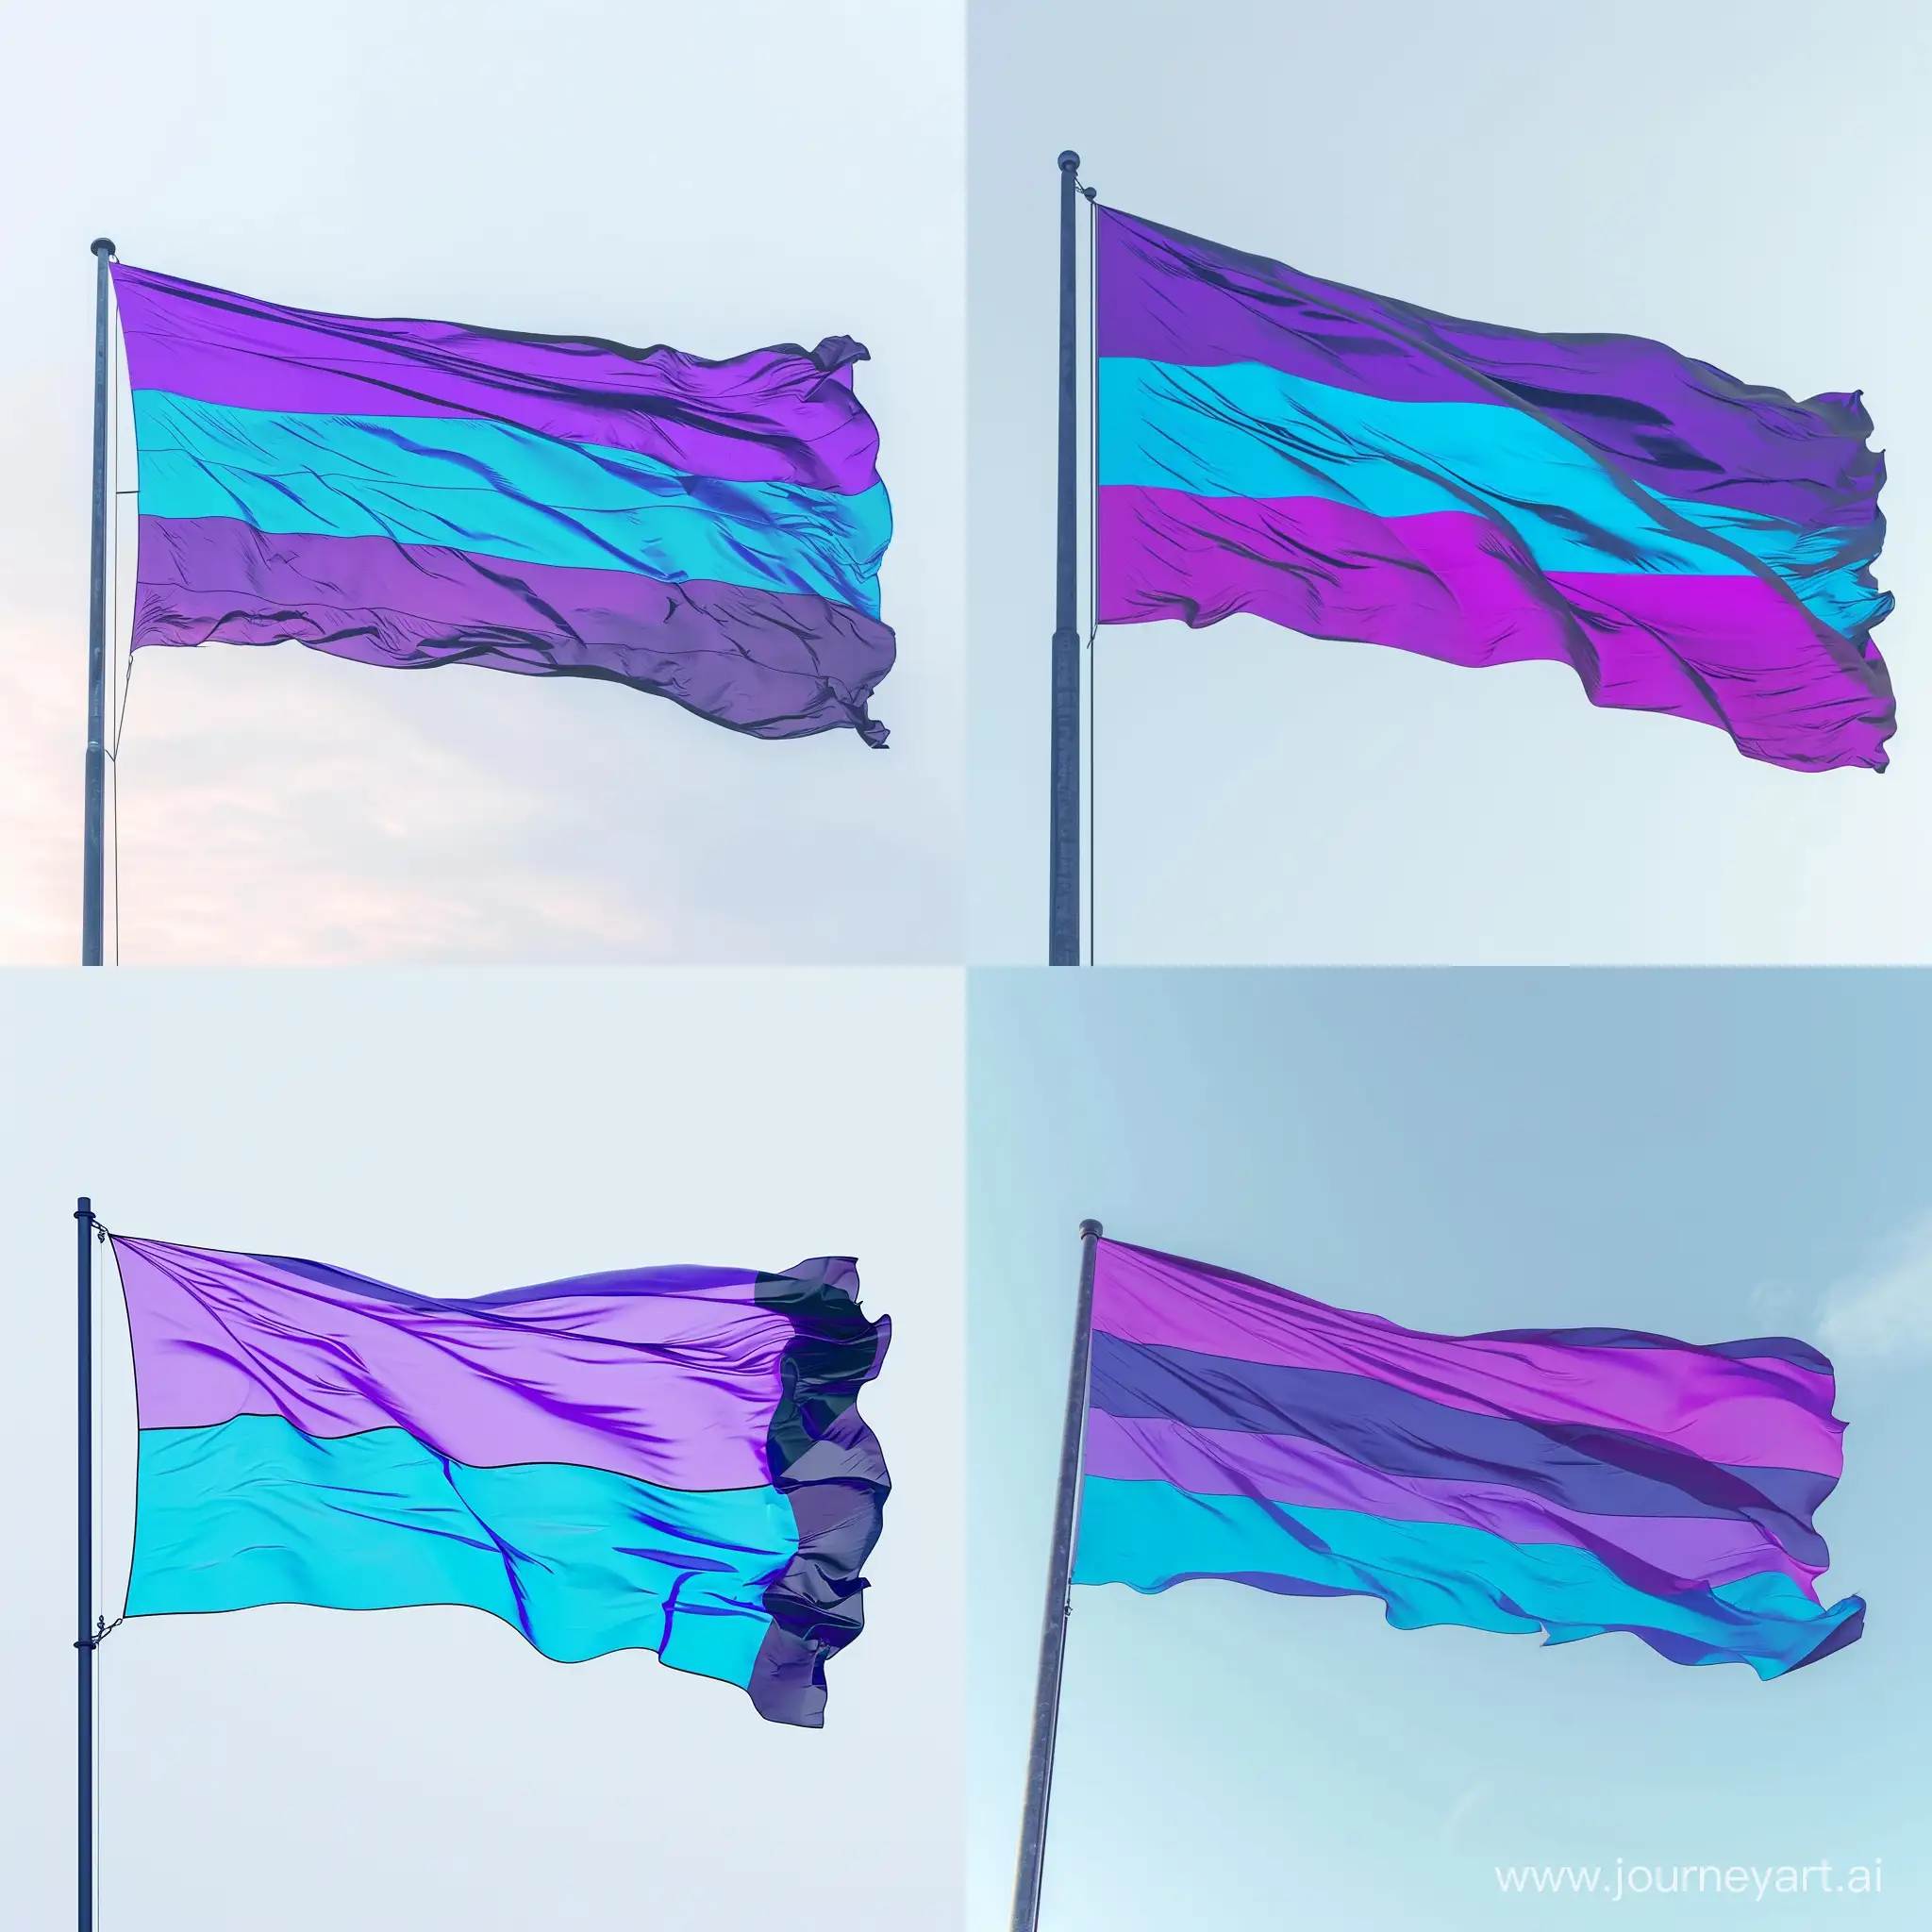 Флаг с фиолетовой, голубой и синей полосами по вертикали, развевающийся на ветру, минимализм